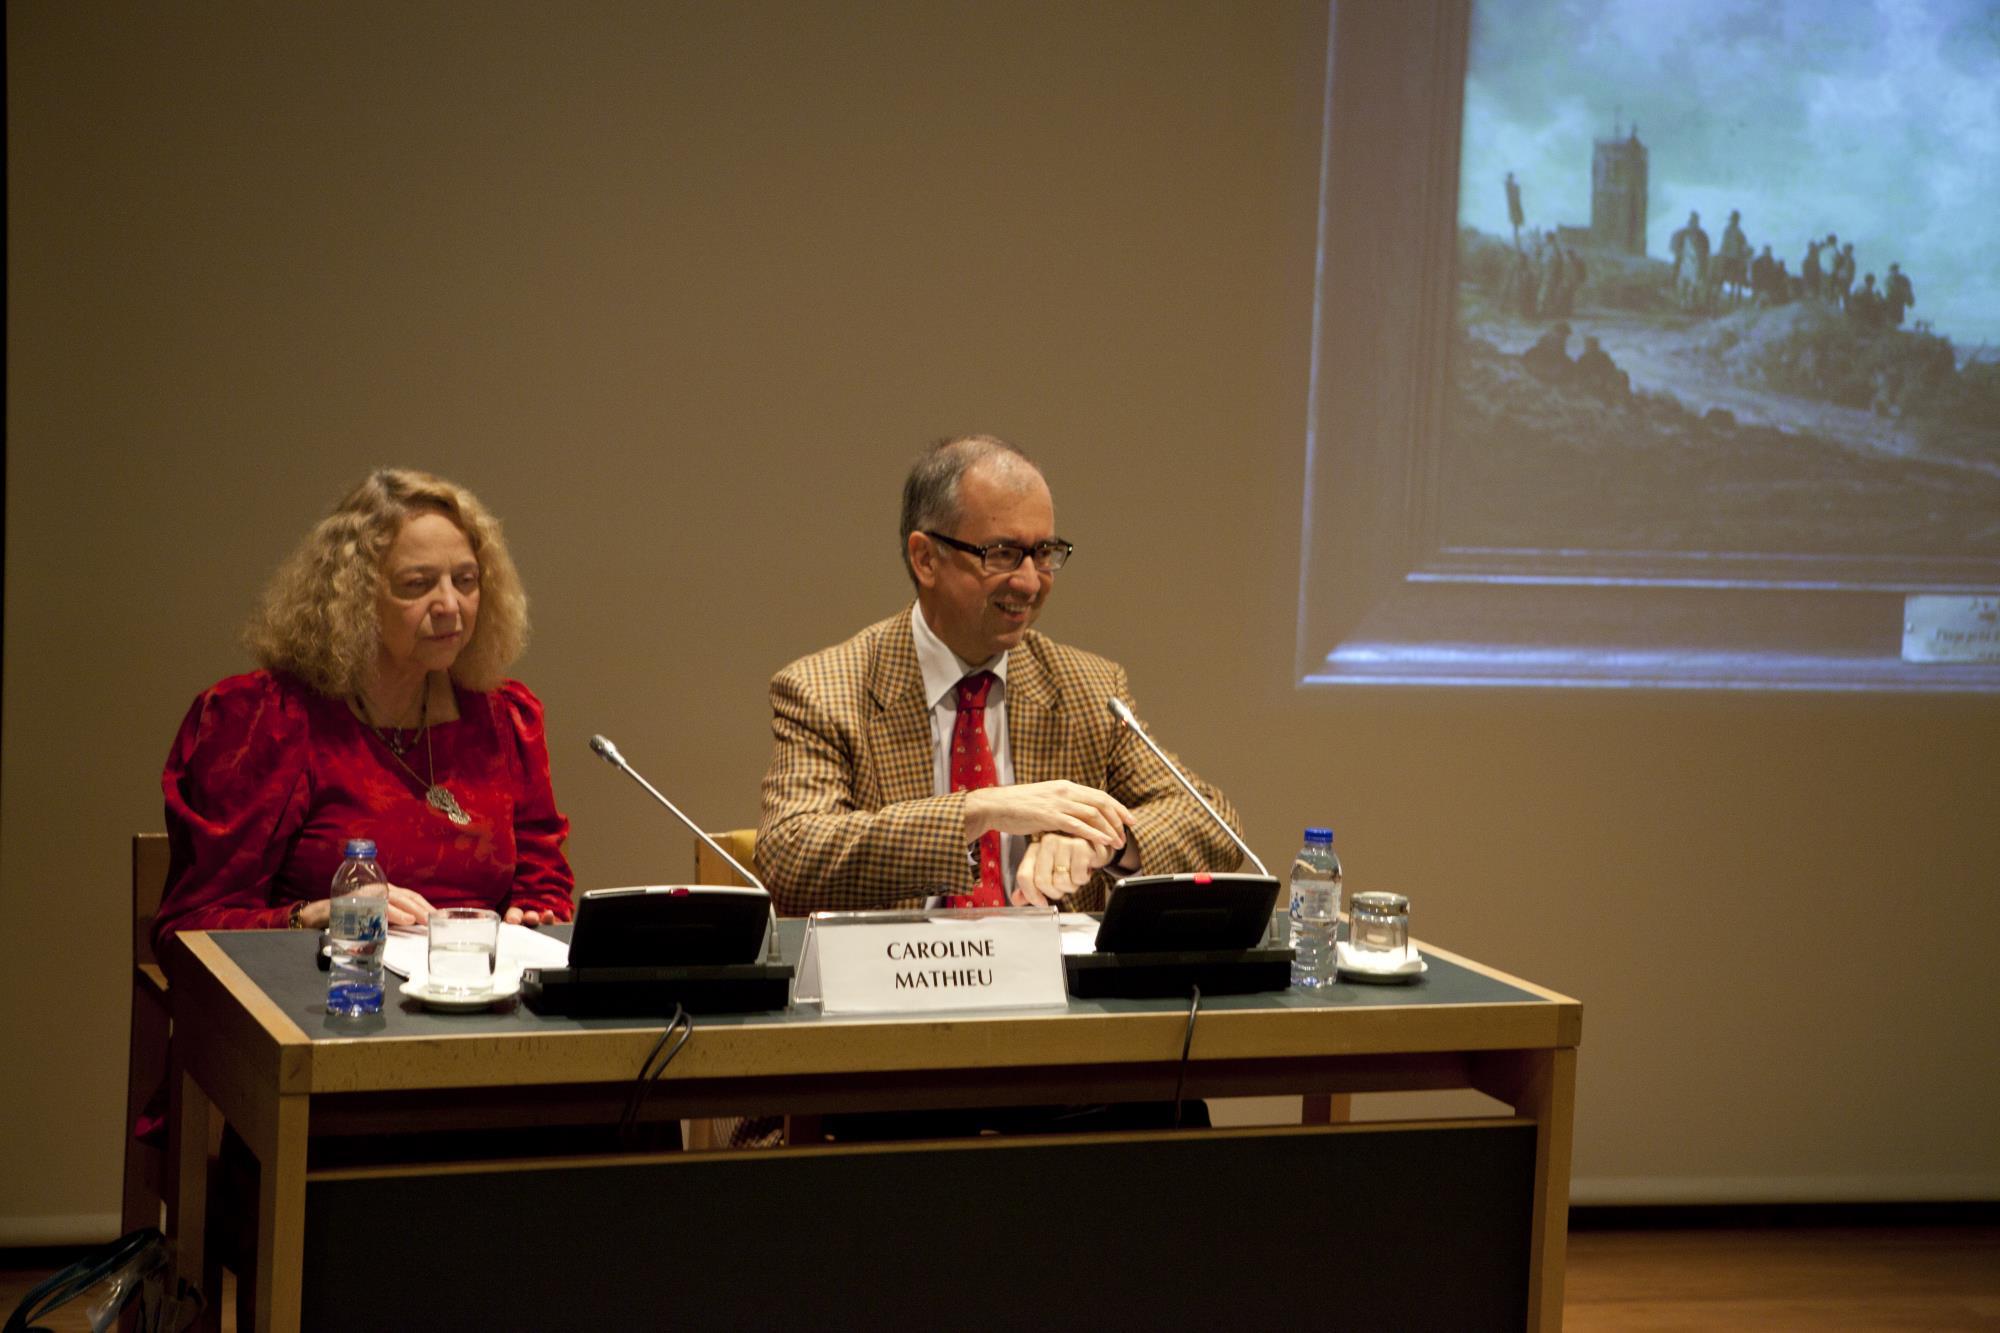 Conferência «As Idades do Mar», proferida por Caroline Mathieu. Caroline Mathieu (à esq.) e Nuno Vassallo e Silva (à dir.)